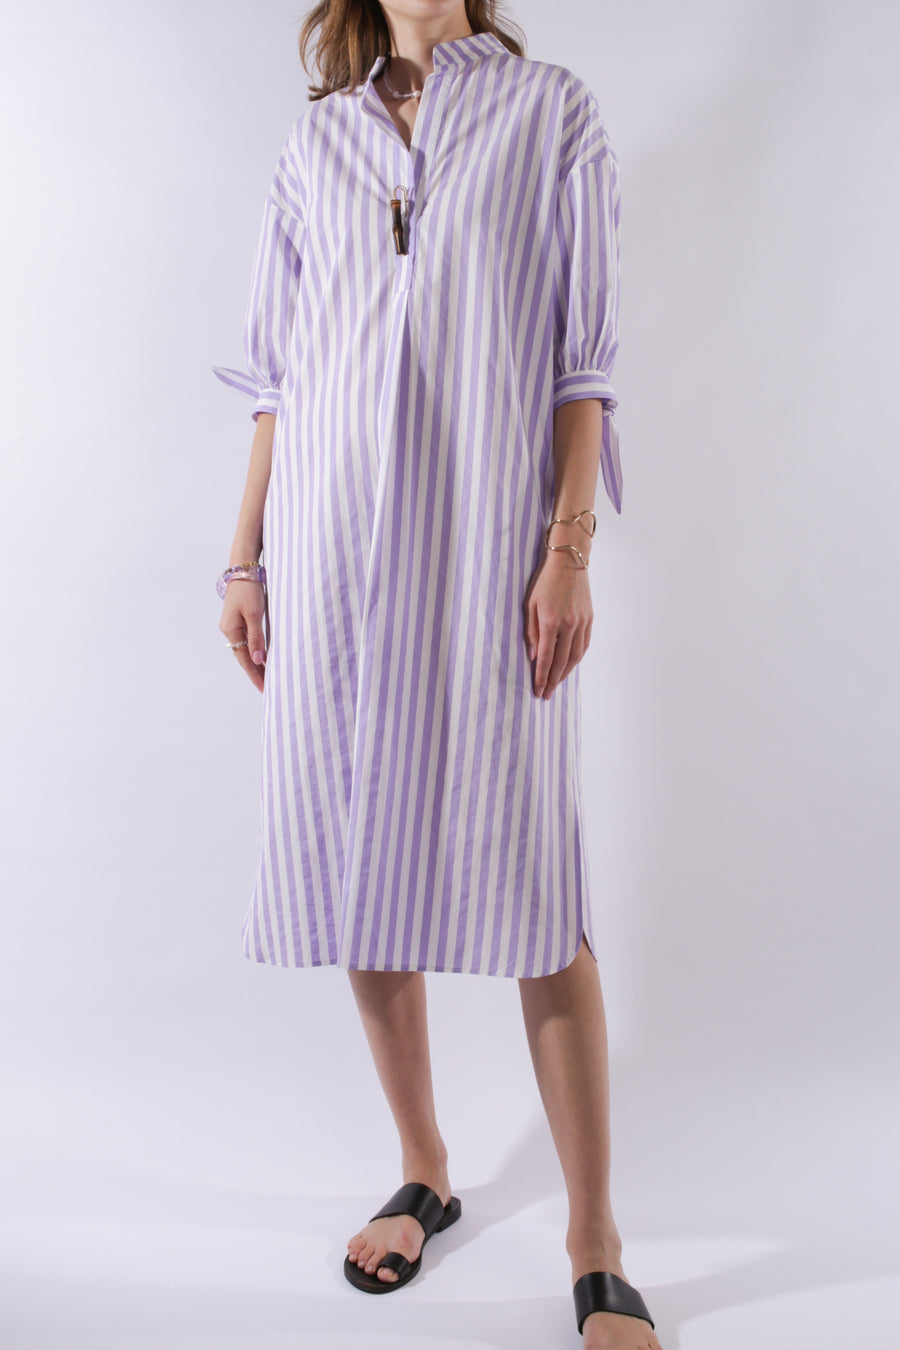 DRESS CRESPI, lavender striped